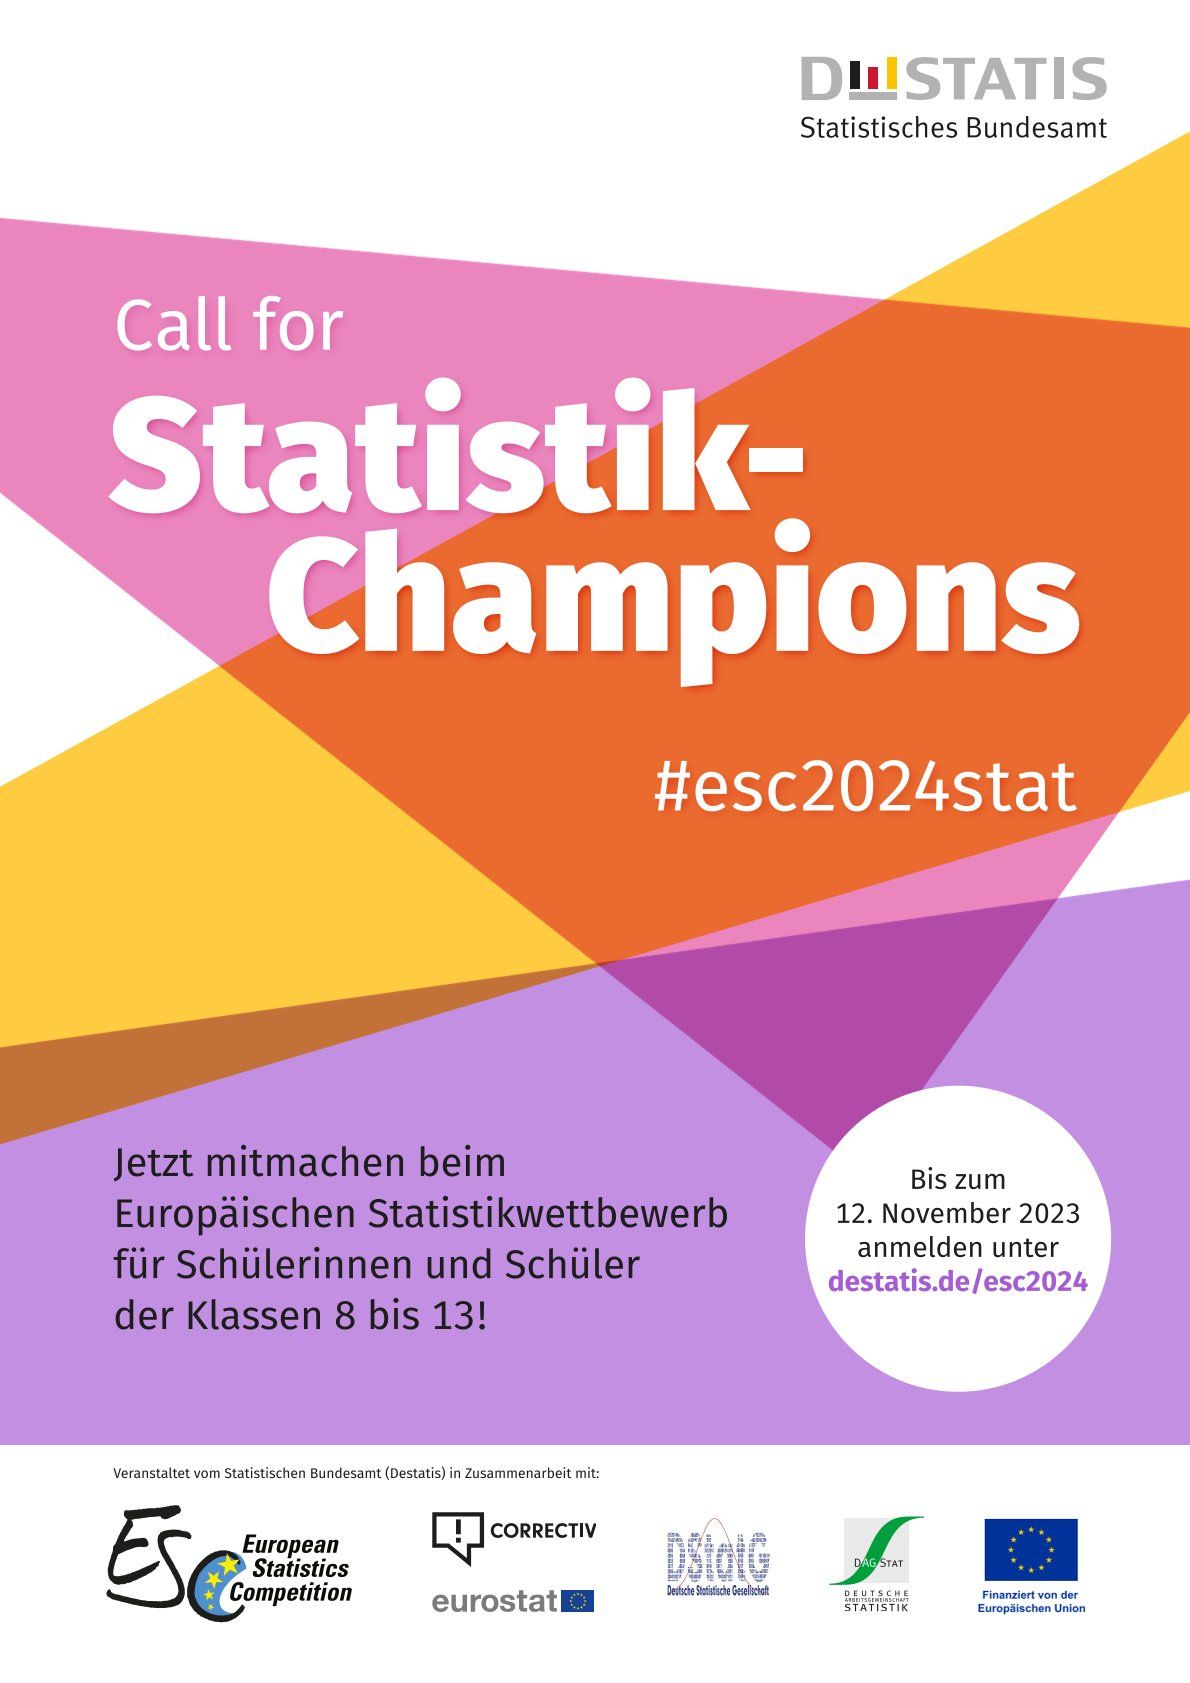 Das Plakat des Europäischen Statistikwettbewerbs wirbt mit dem Slogan "Call for Statistik-Champions".